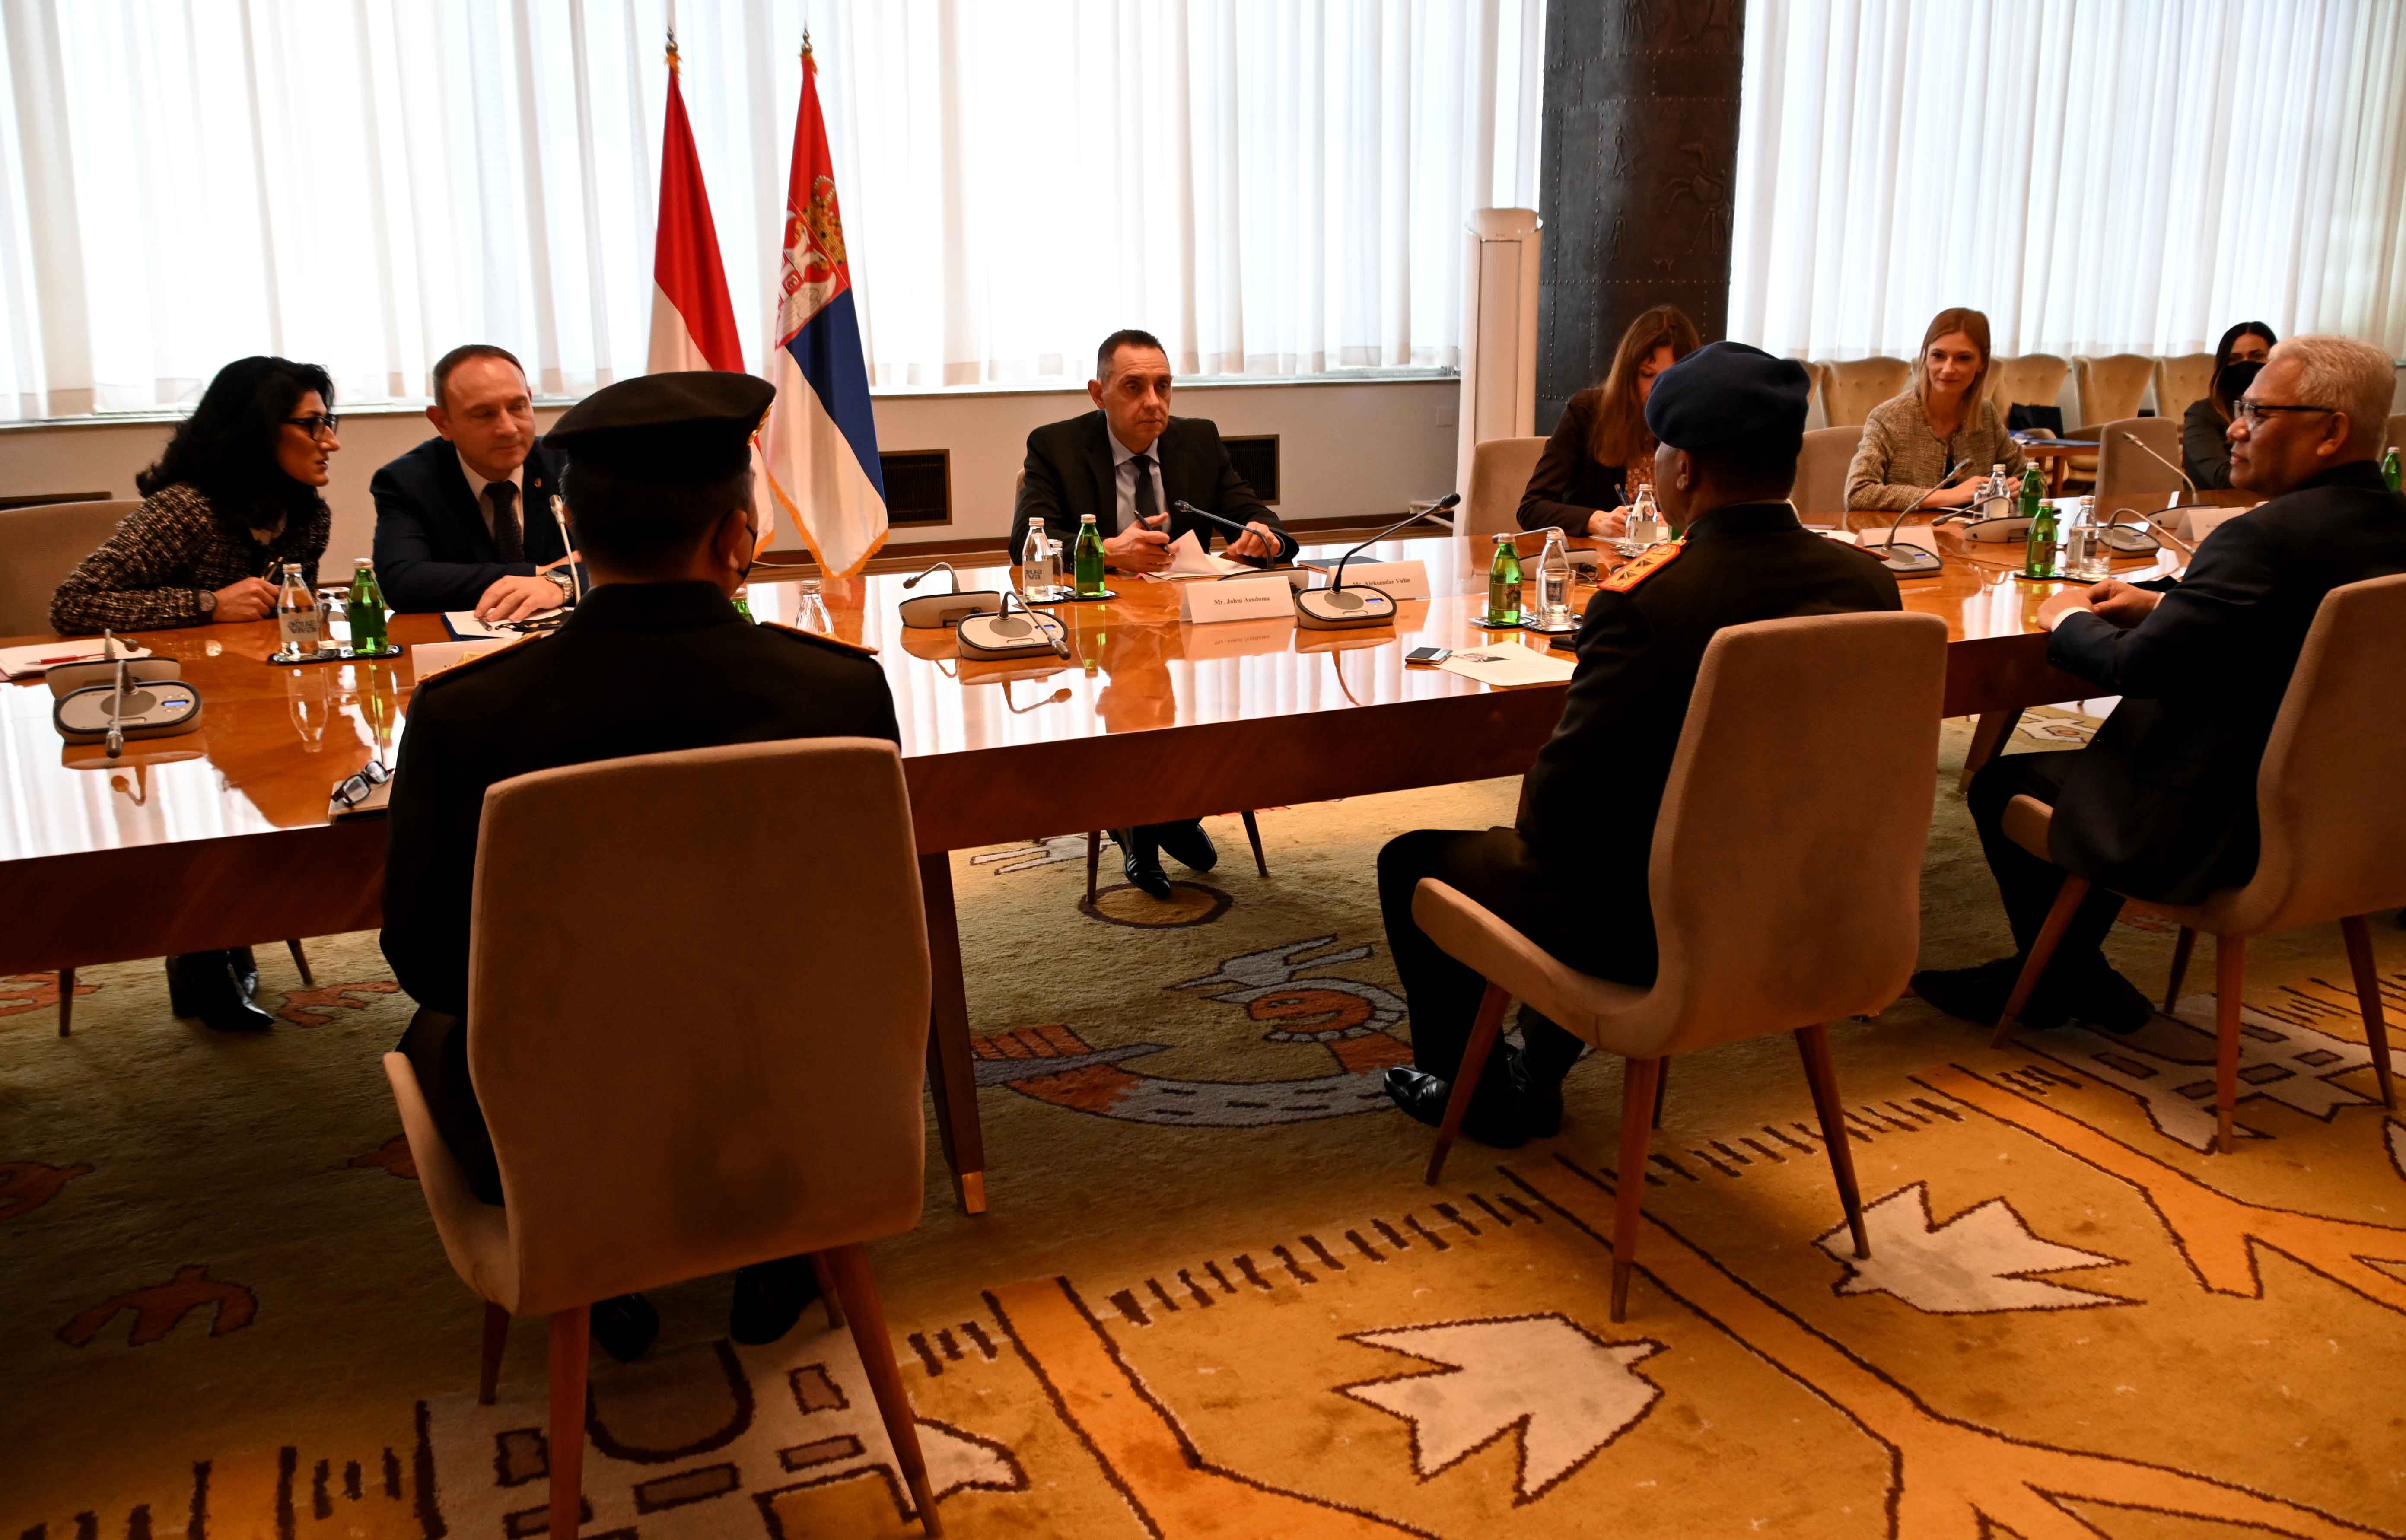 Министар Вулин се захвалио индонежанској делегацији која је поновила принципијелан став по питању непризнавања такозваног Косова